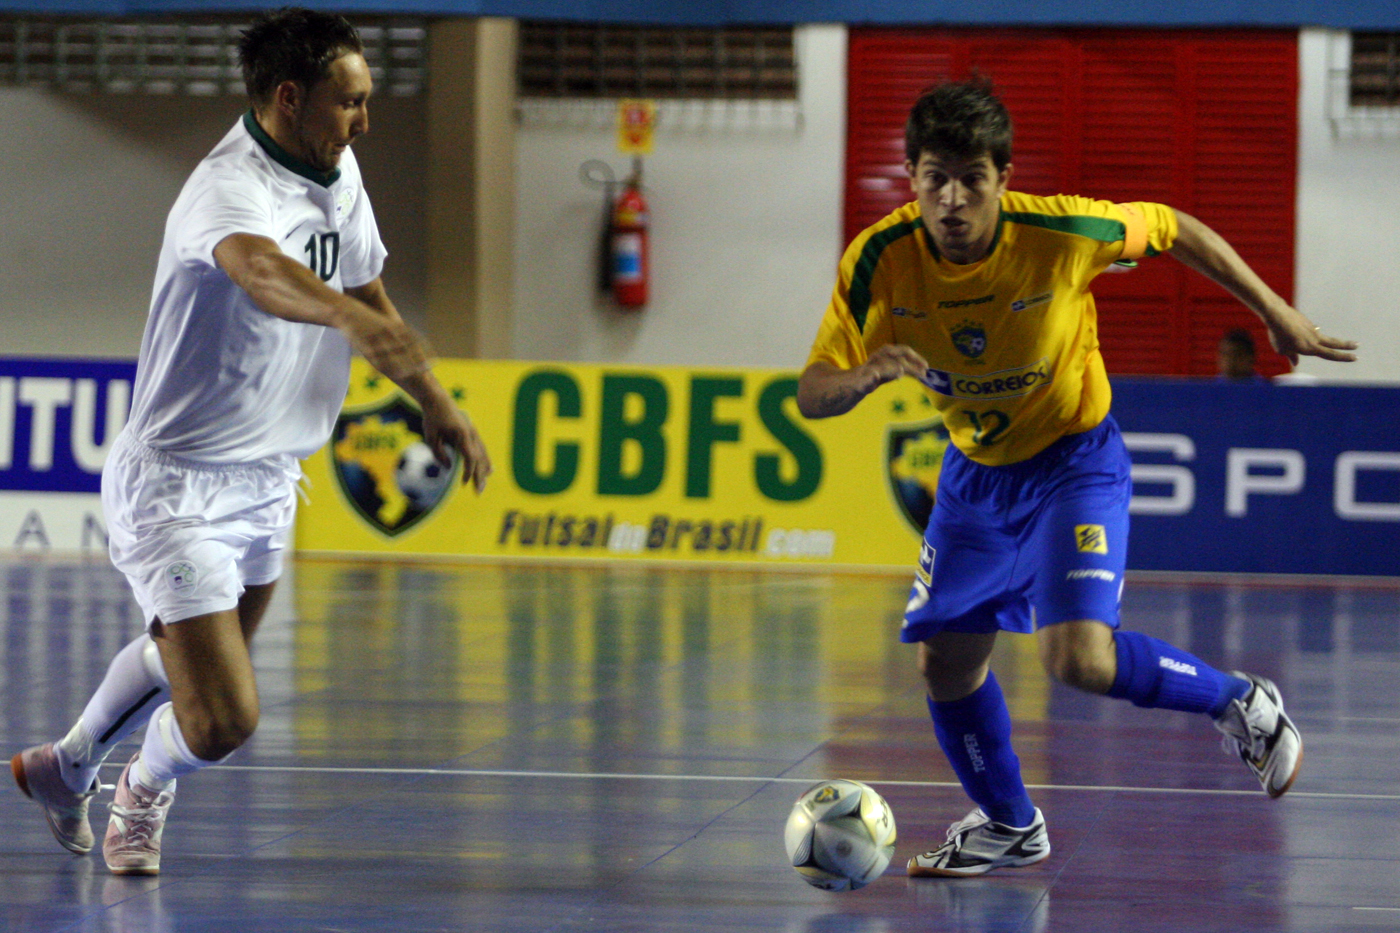 Jogadores da seleção disputam campeonato de futsal em Dracena - Globo.com